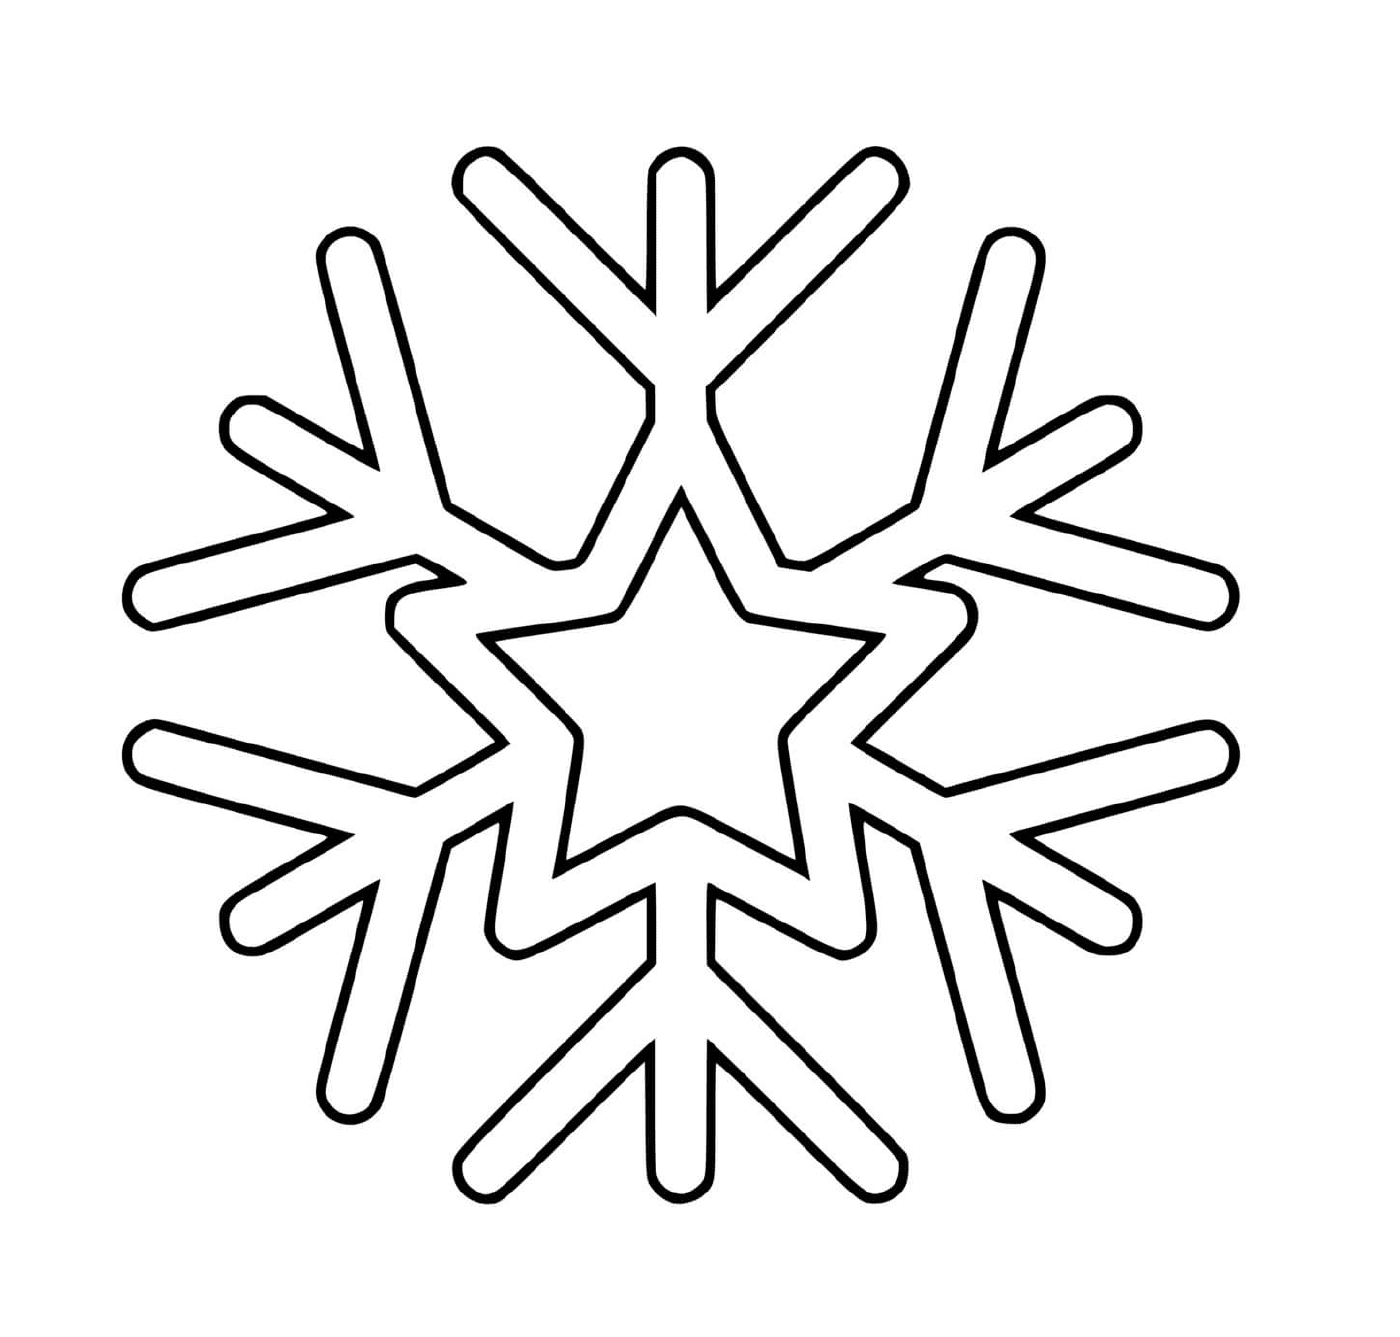  Um floco de neve com uma estrela 